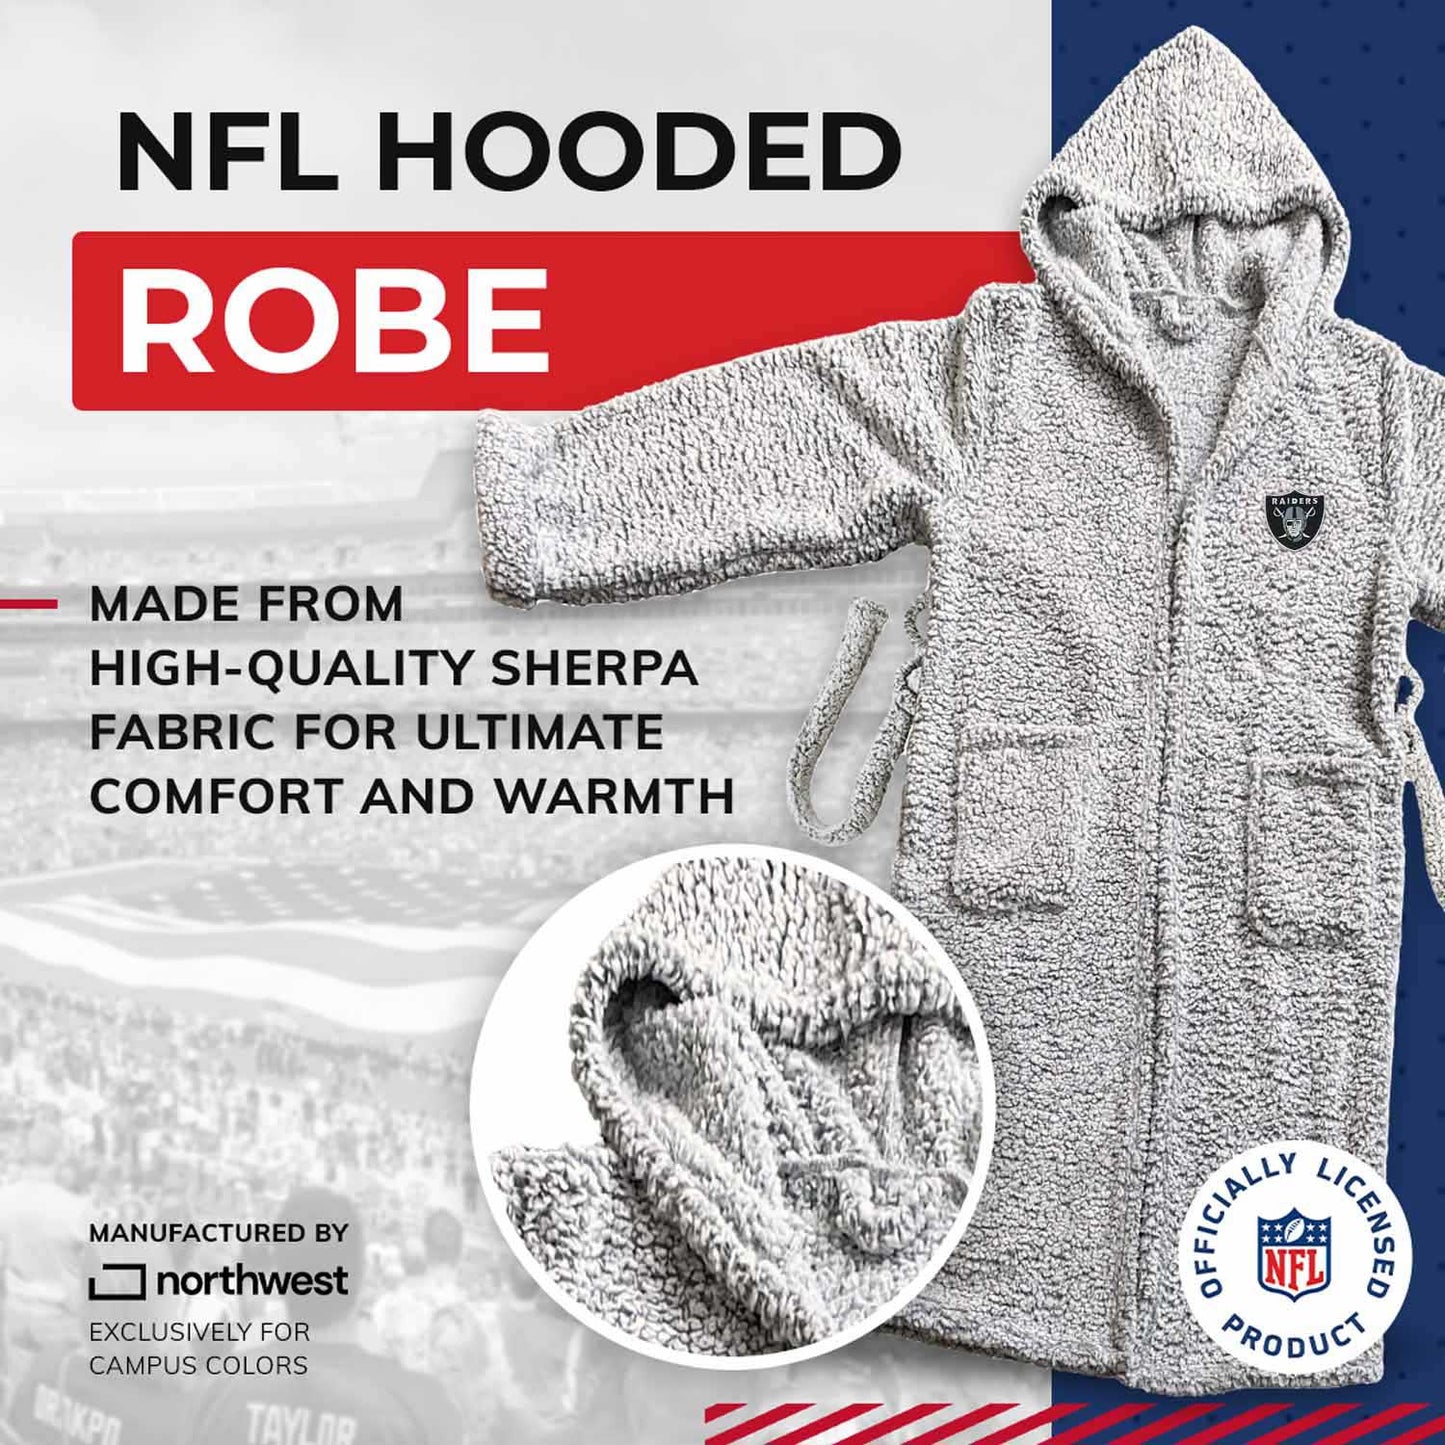 Las Vegas Raiders NFL Plush Hooded Robe with Pockets - Gray